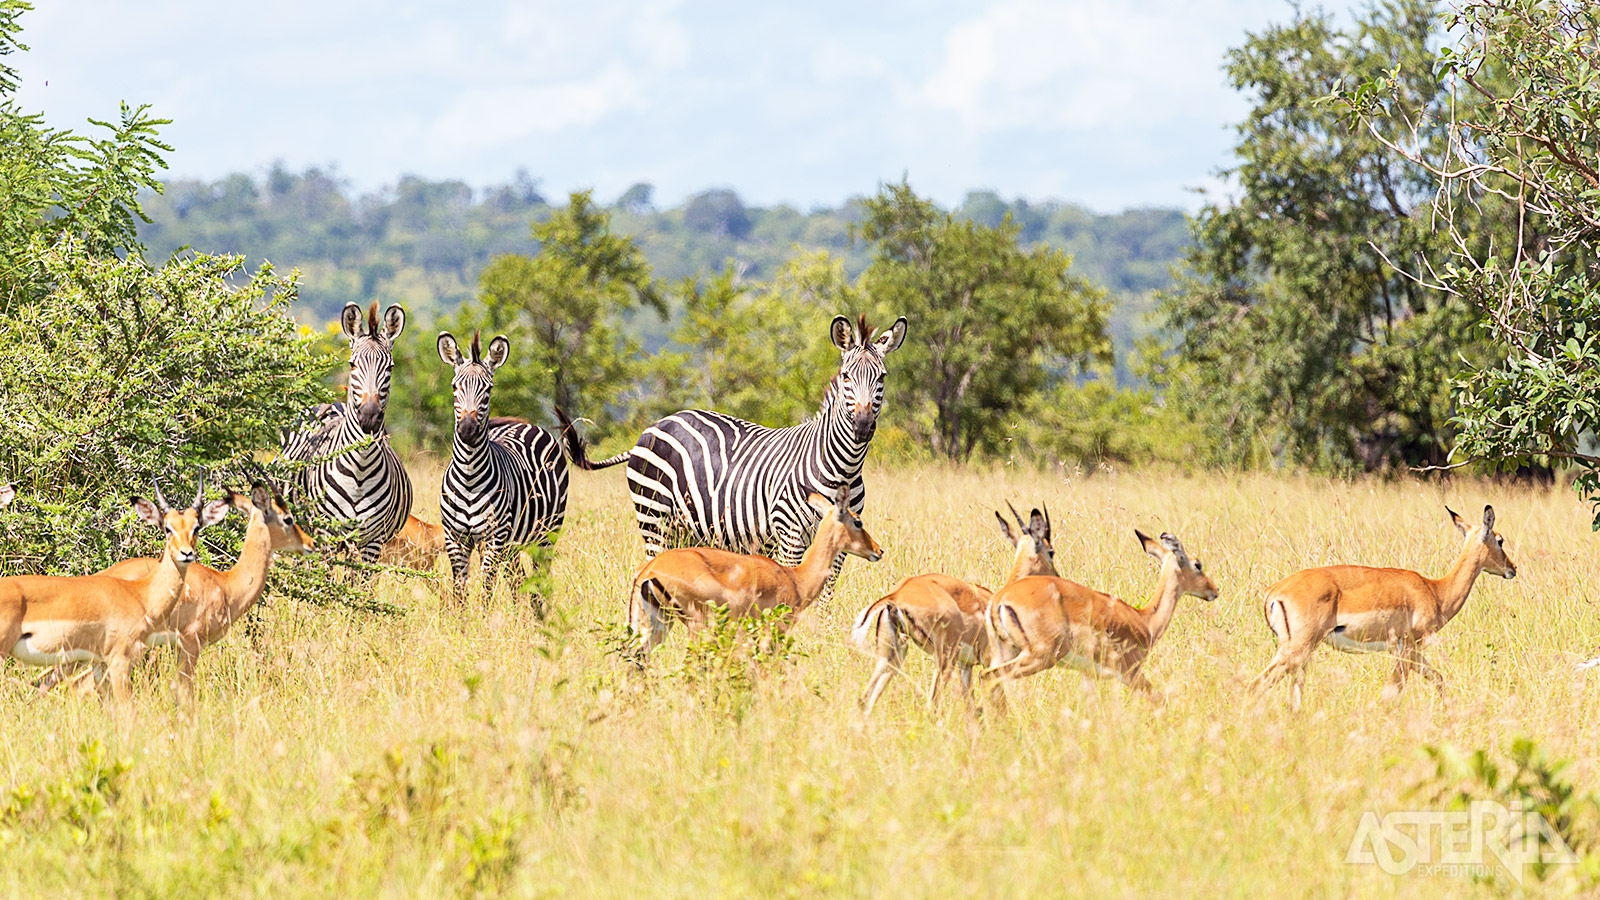 Hoewel minder bekend dan de Serengeti en het Kruger Park, mag het Selous Game Reserve zich het grootste wildreservaat van Afrika noemen